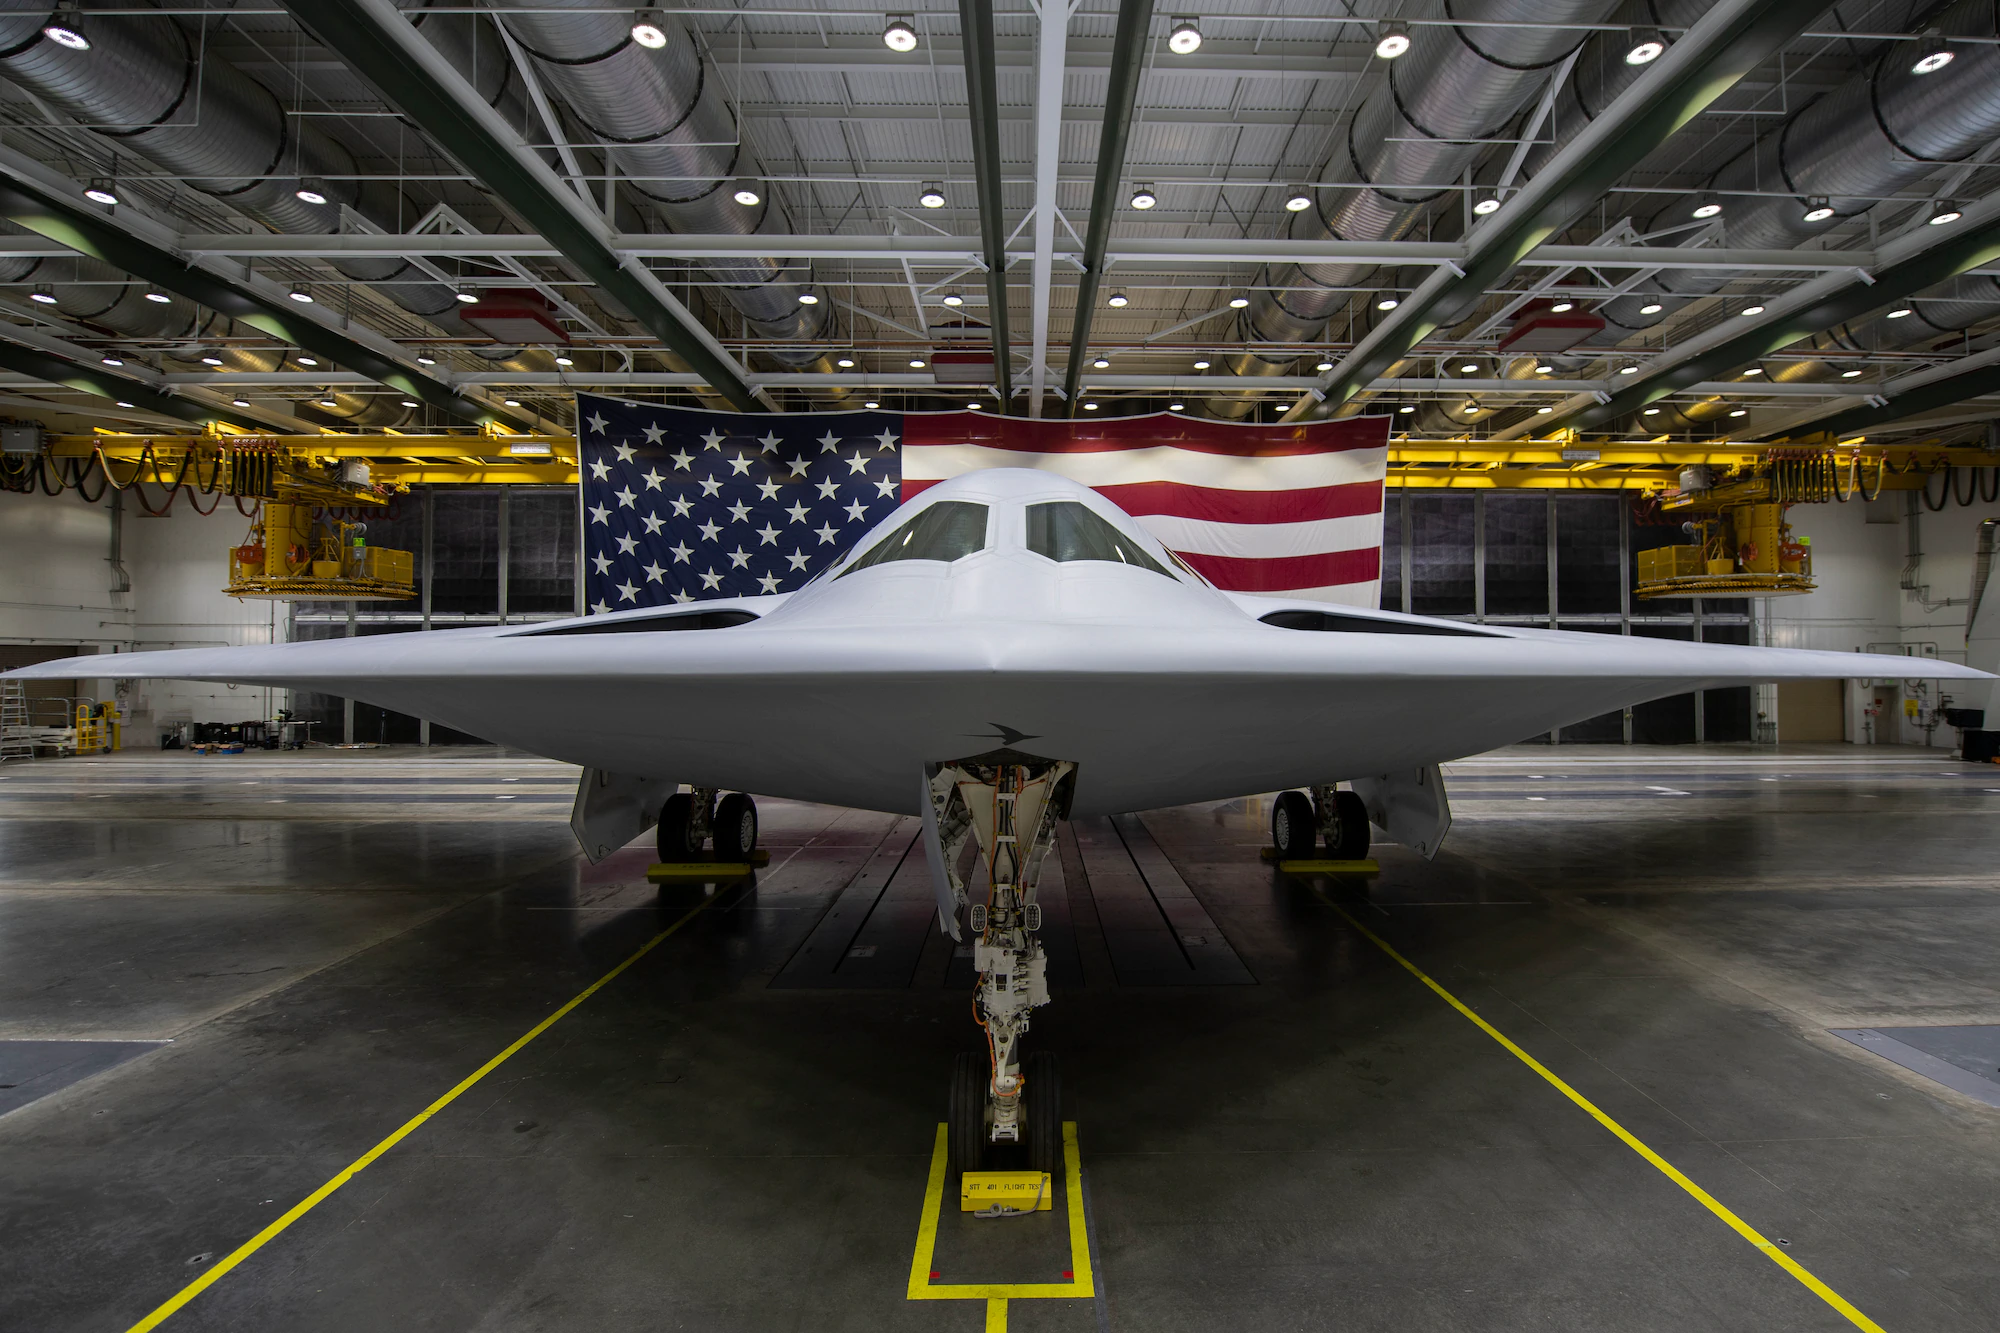 De Amerikaanse luchtmacht overwoog het gezamenlijke gebruik van B-21 Raider nucleaire bommenwerpers en geleide drones...